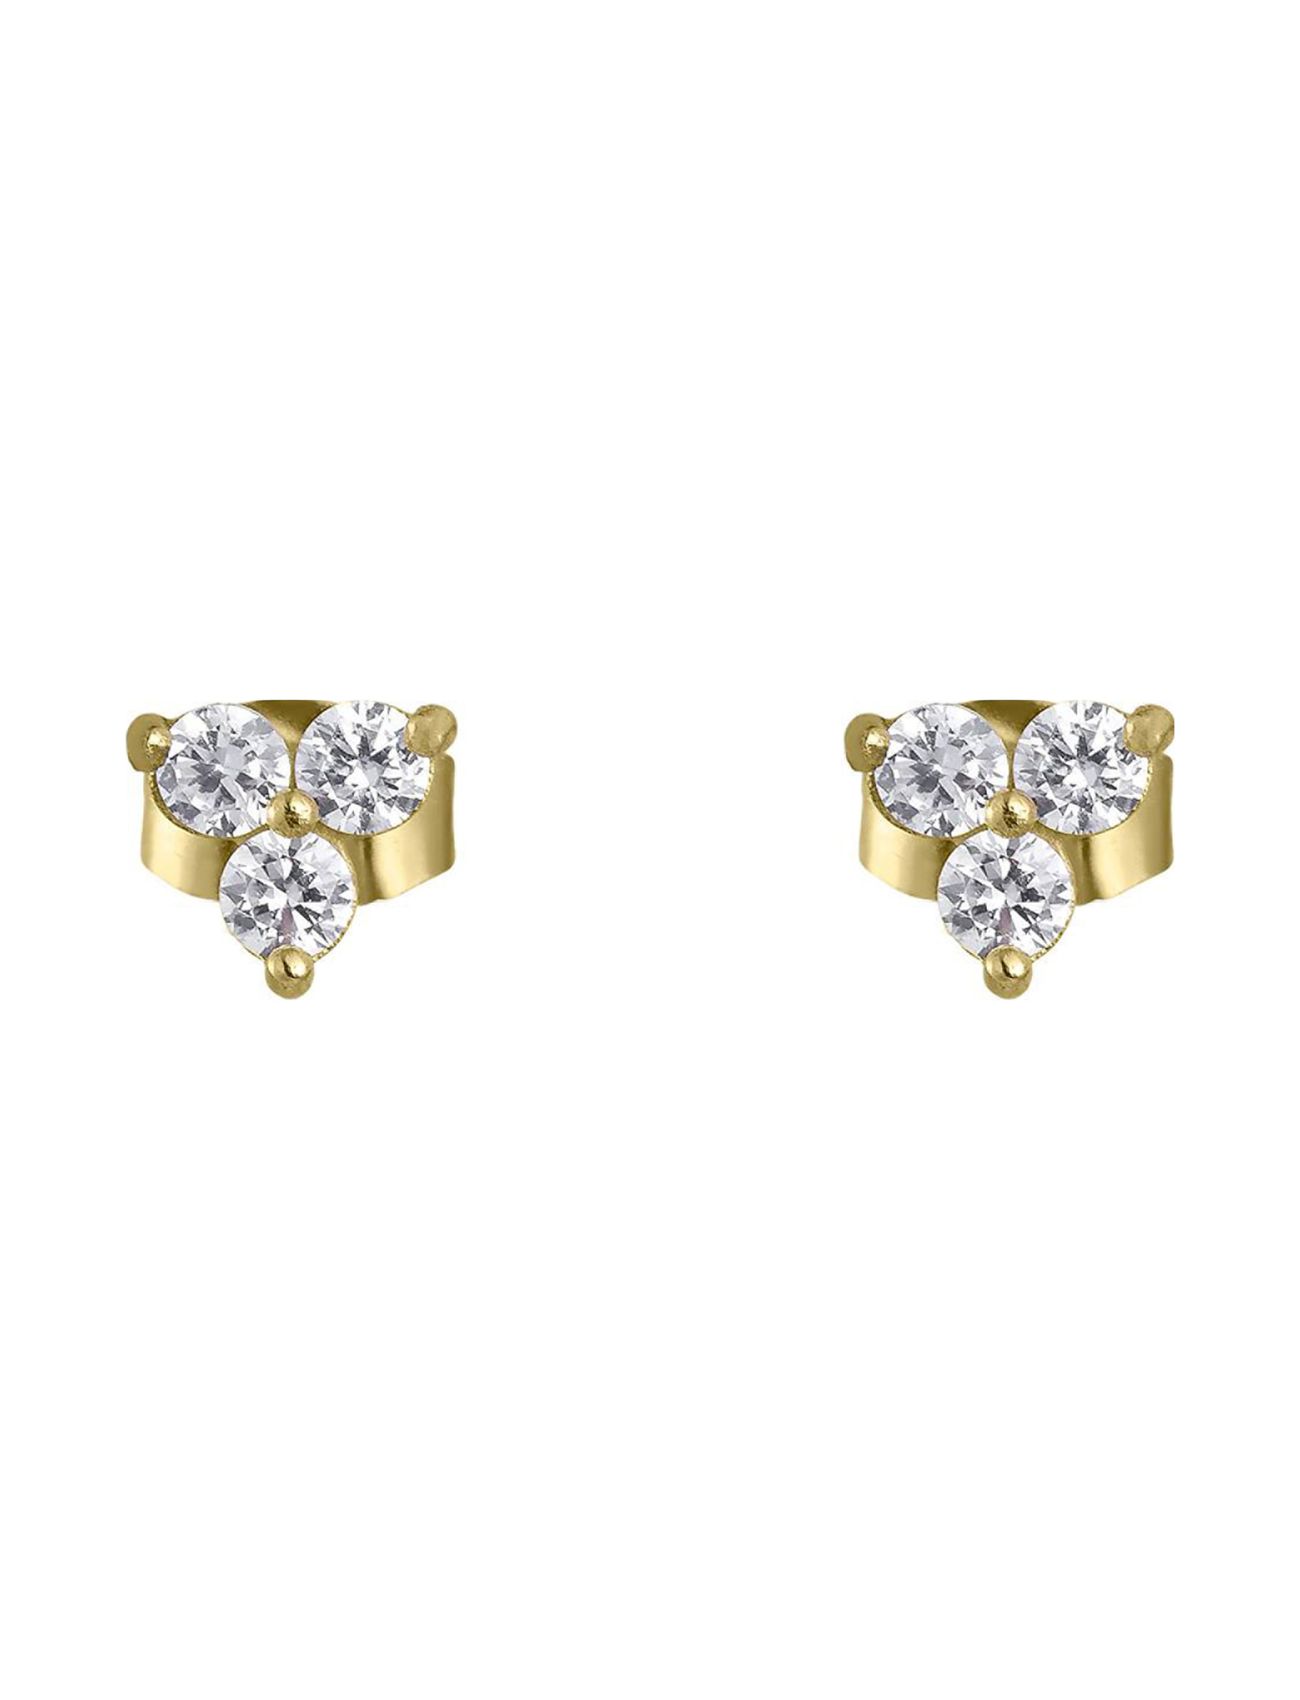 Flower Crystal Earring Accessories Jewellery Earrings Studs Gold By Jolima